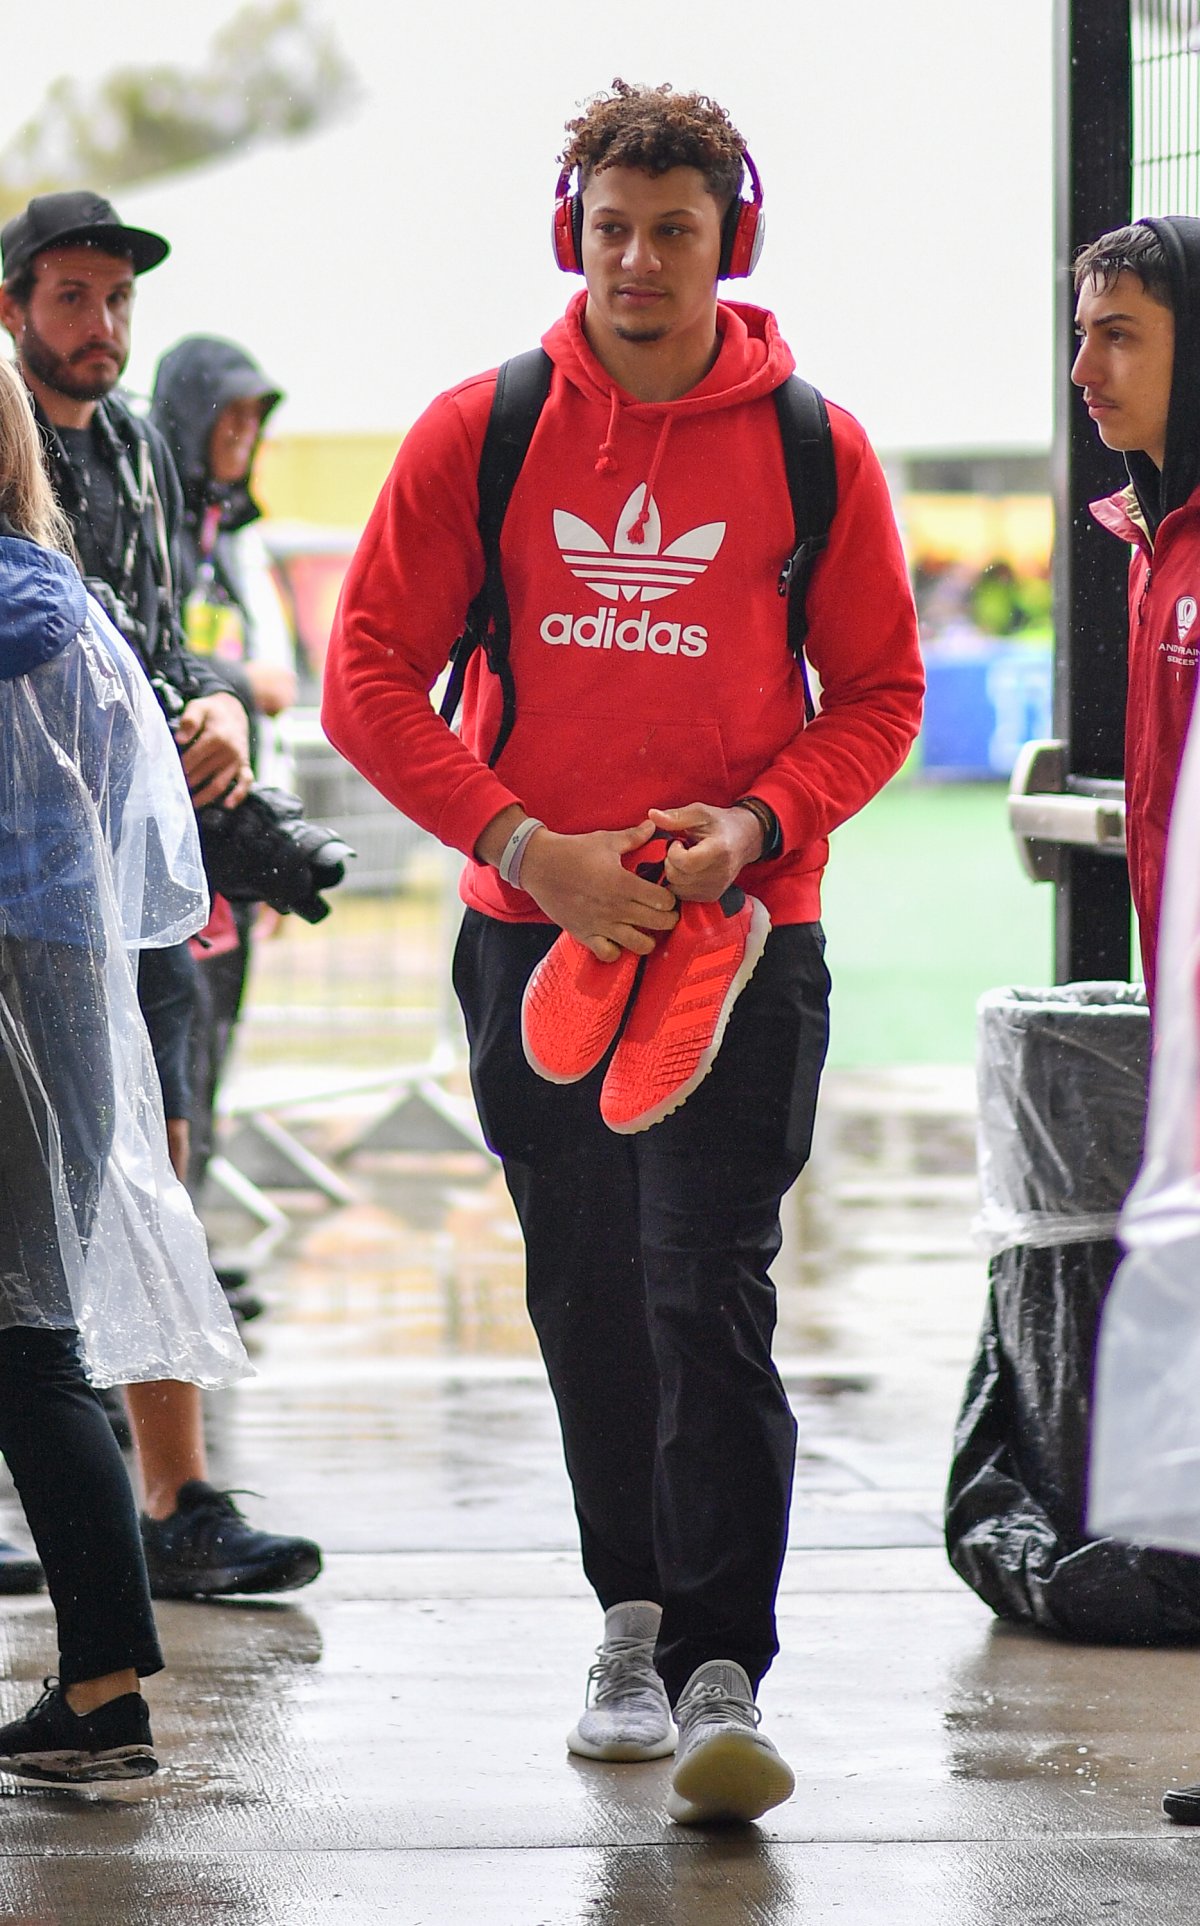 Adidas Athlete Patrick Mahomes Does Nike Bad Upon Wearing KC